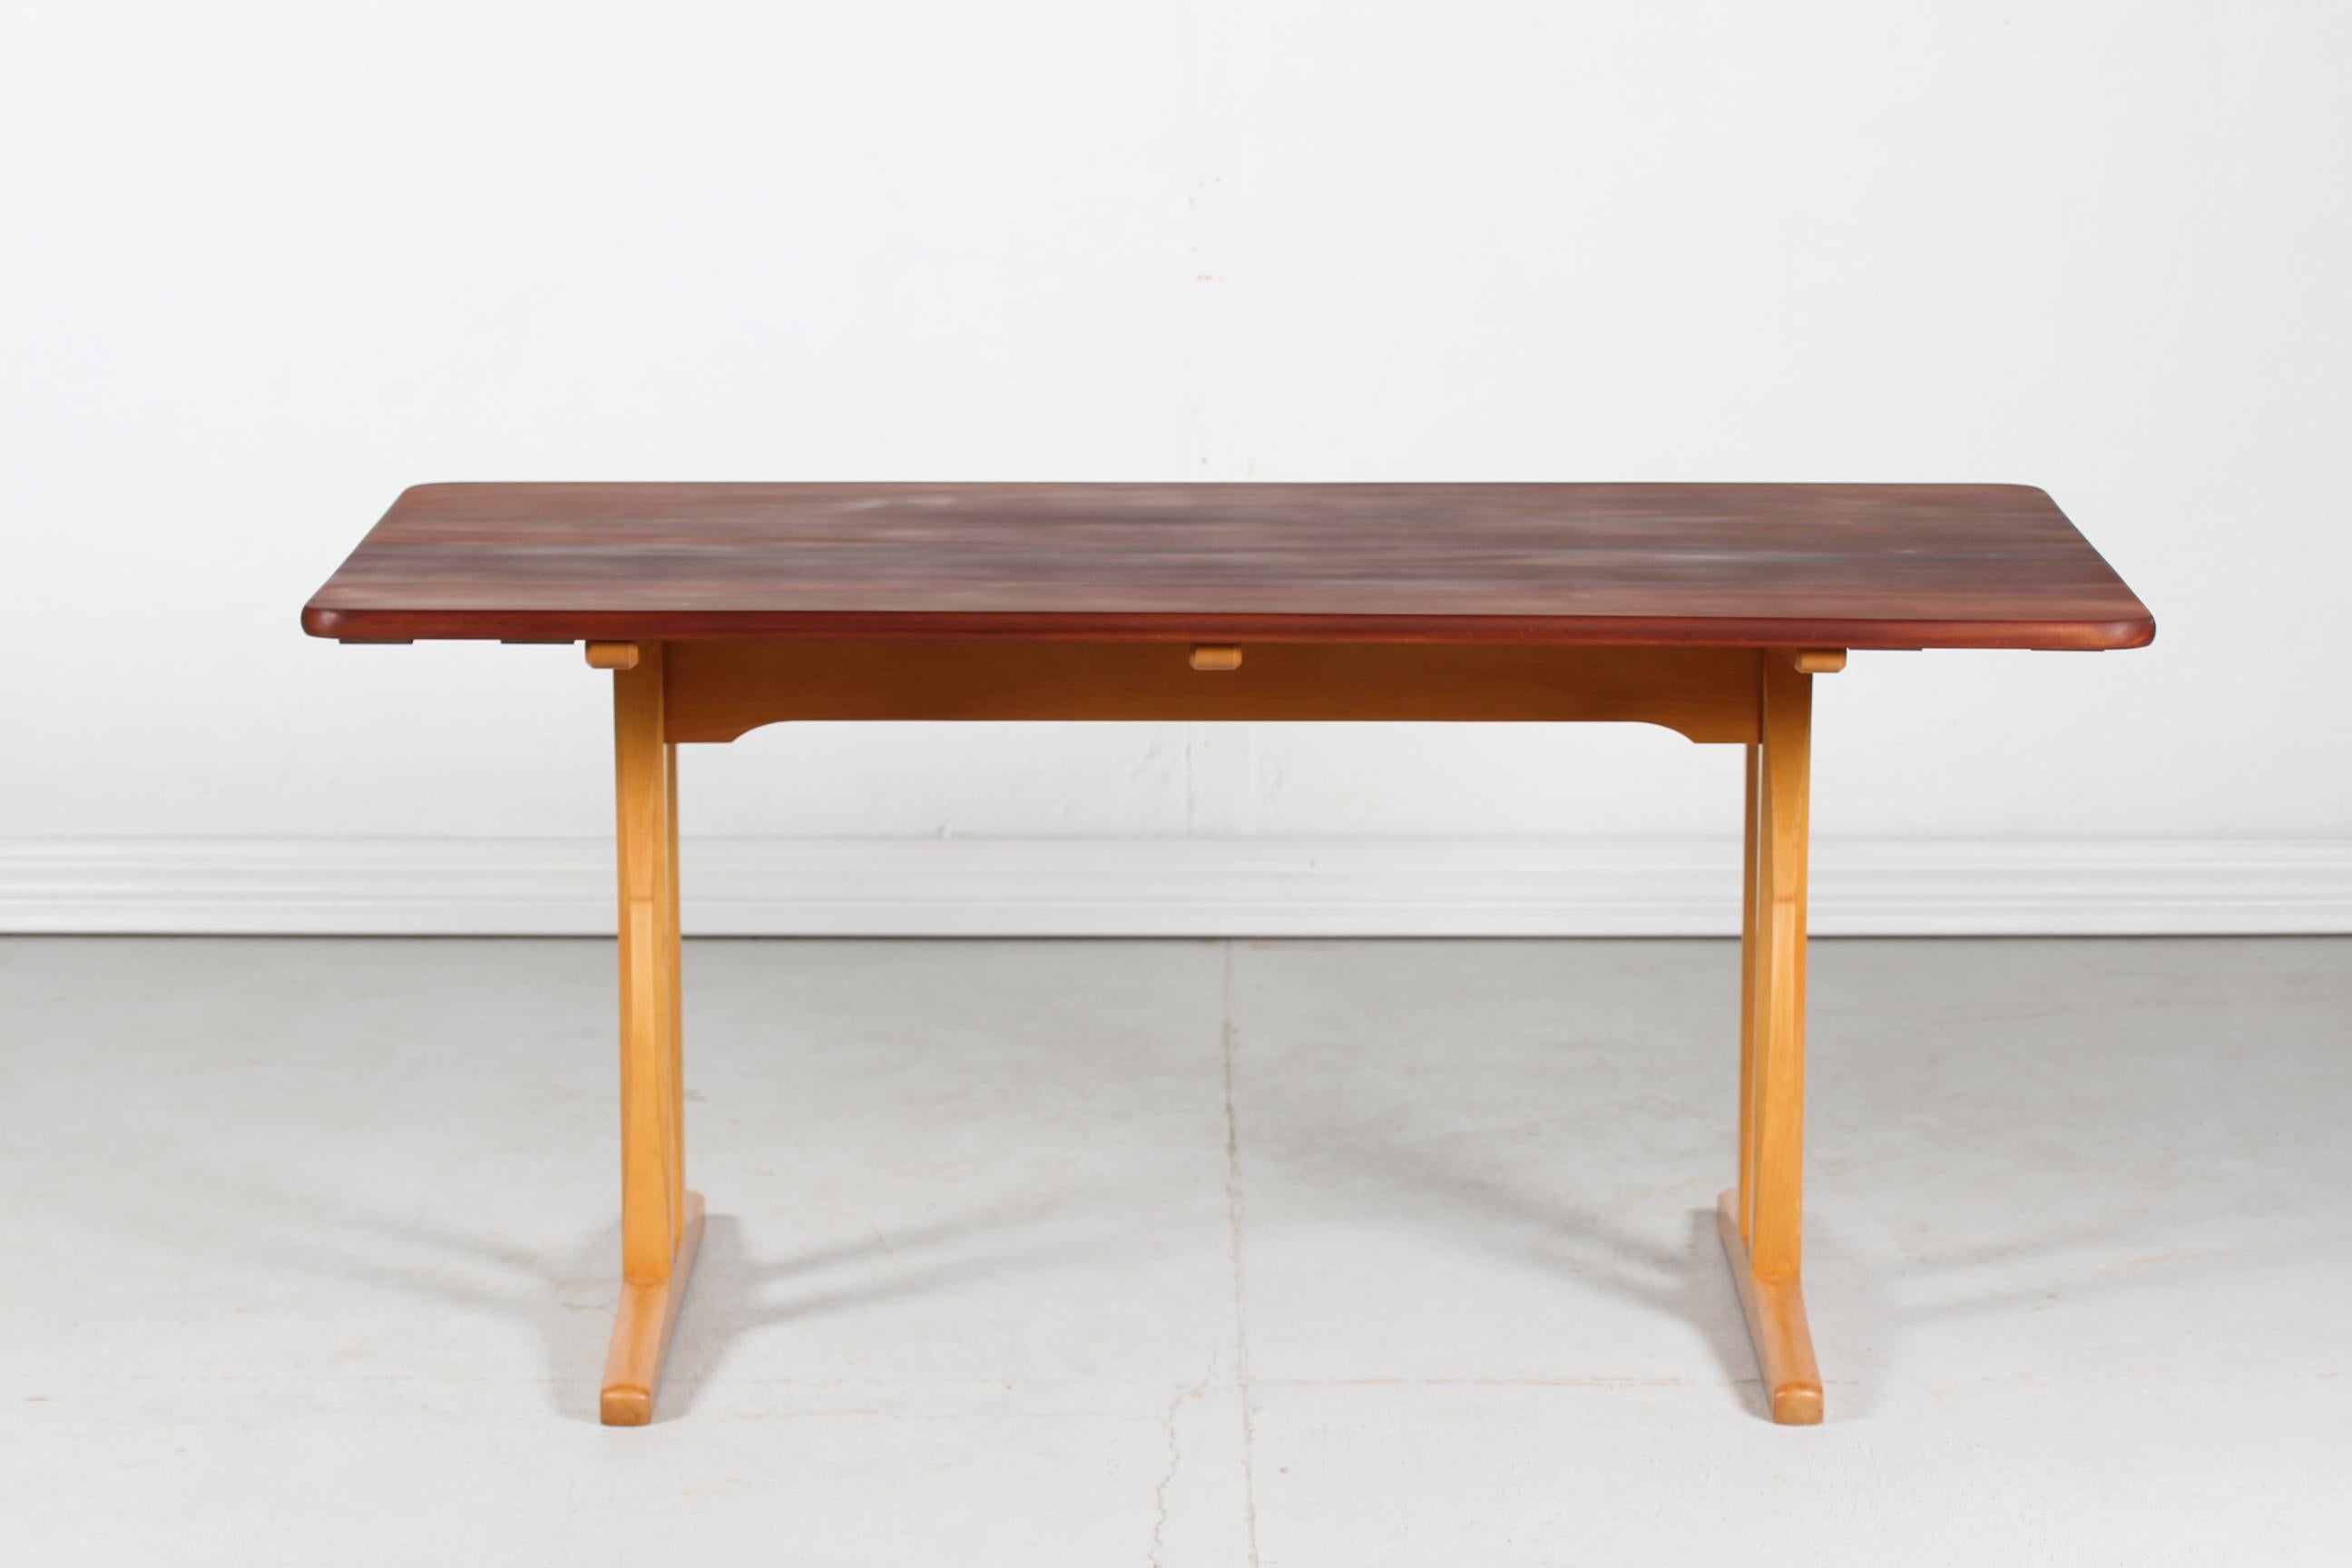 Seltener dänischer Vintage Børge Mogensen Shaker Tisch Modell C 18 vom dänischen Möbelhersteller FBD Møbler 
Das Modell C 18 wurde 1947 entworfen und in den 1950er Jahren hergestellt.

Die Tischplatte ist aus geöltem, massivem Teakholz und das